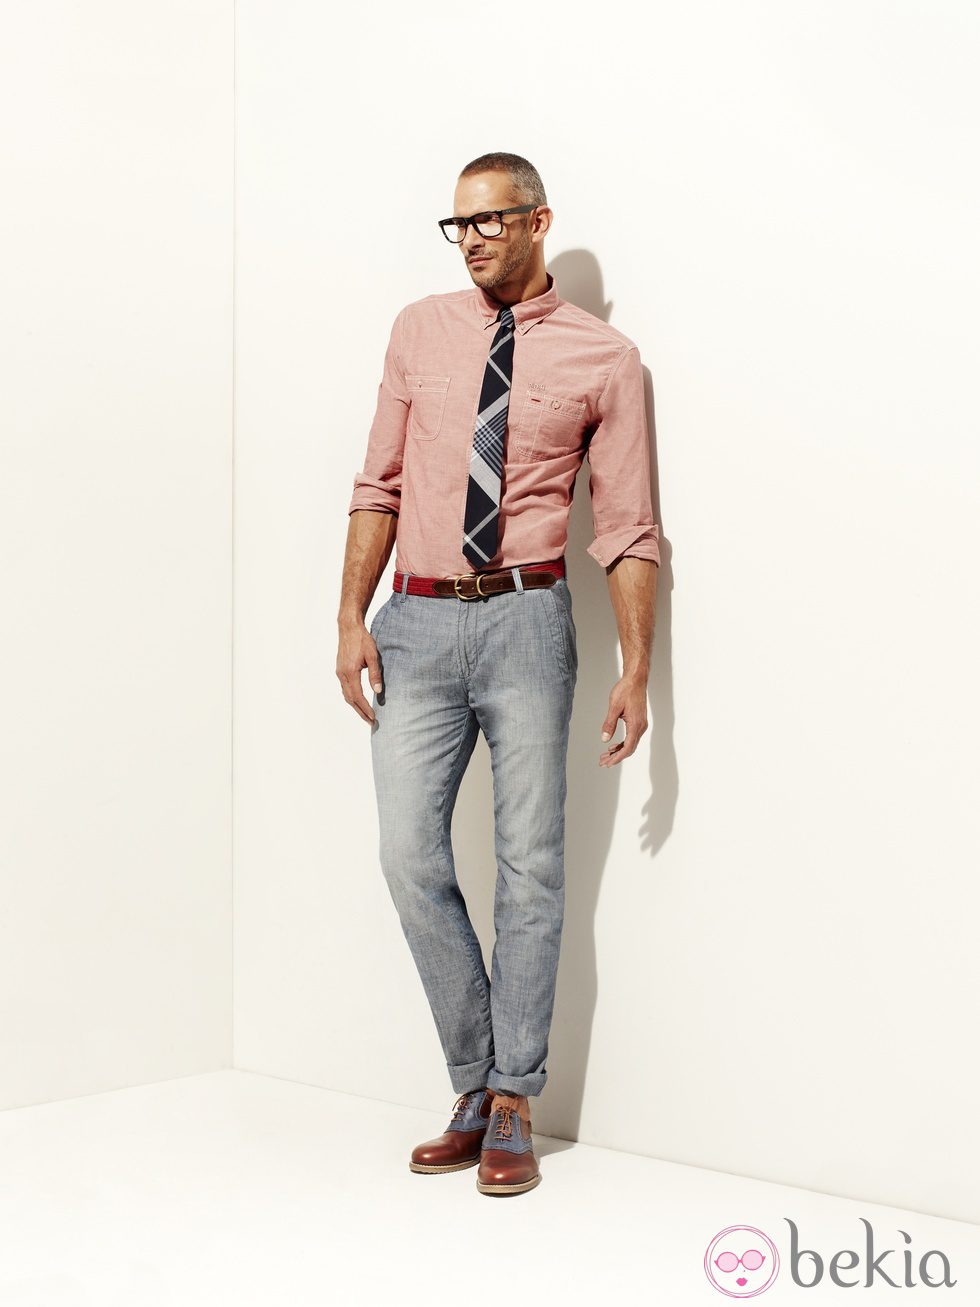 Camisa color salmón y corbata de la colección verano 2012 de la línea masculina de Pedro del Hierro